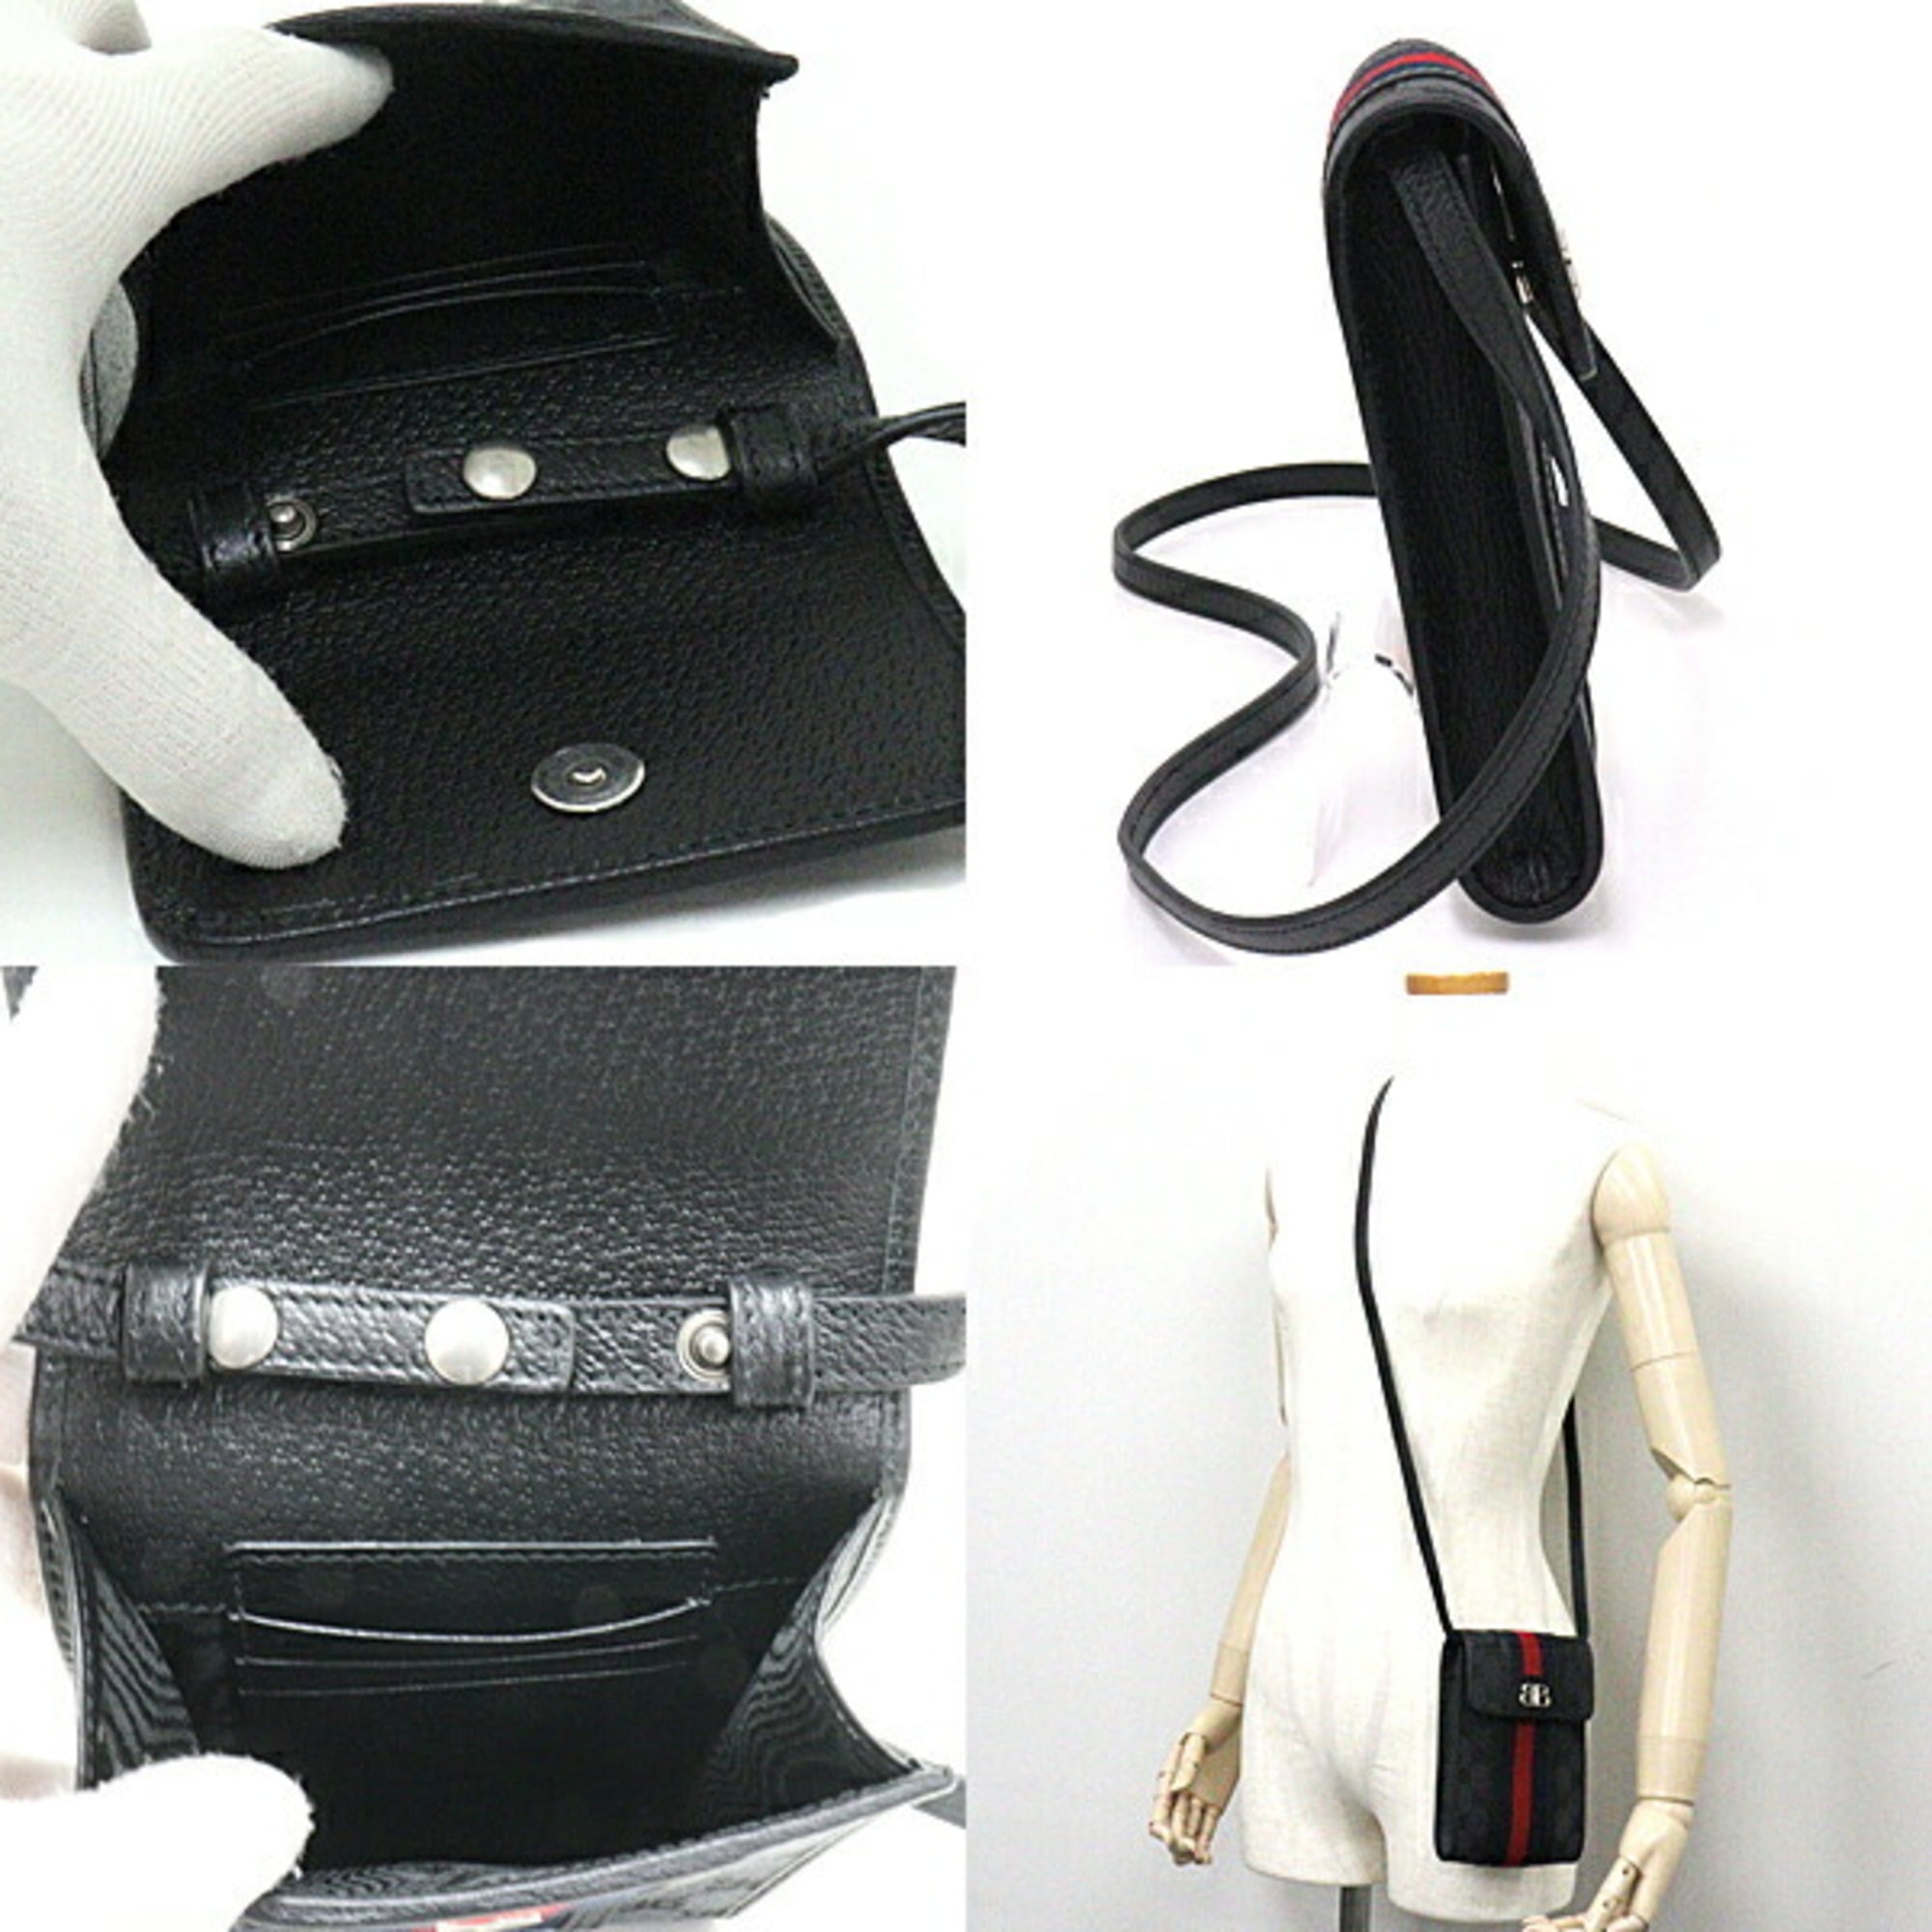 Balenciaga Gucci Collaboration Hacker Smartphone Bag Pochette Canvas/Leather  680130